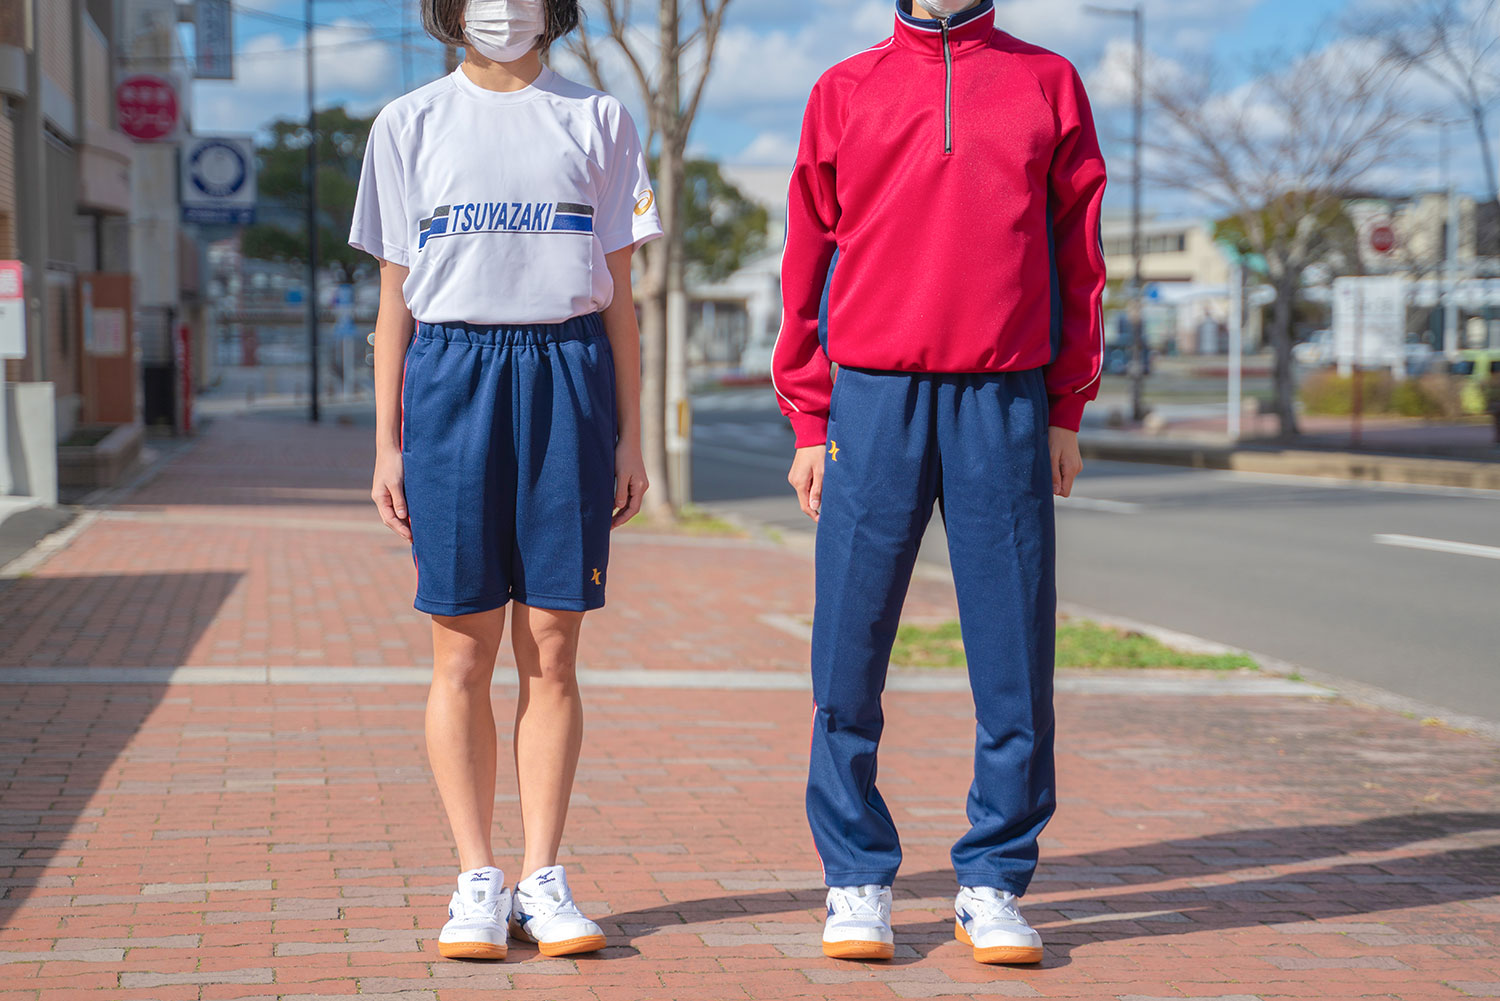 津屋崎中学校 の体操服お申し込み- VSPORTS・プロポーザル